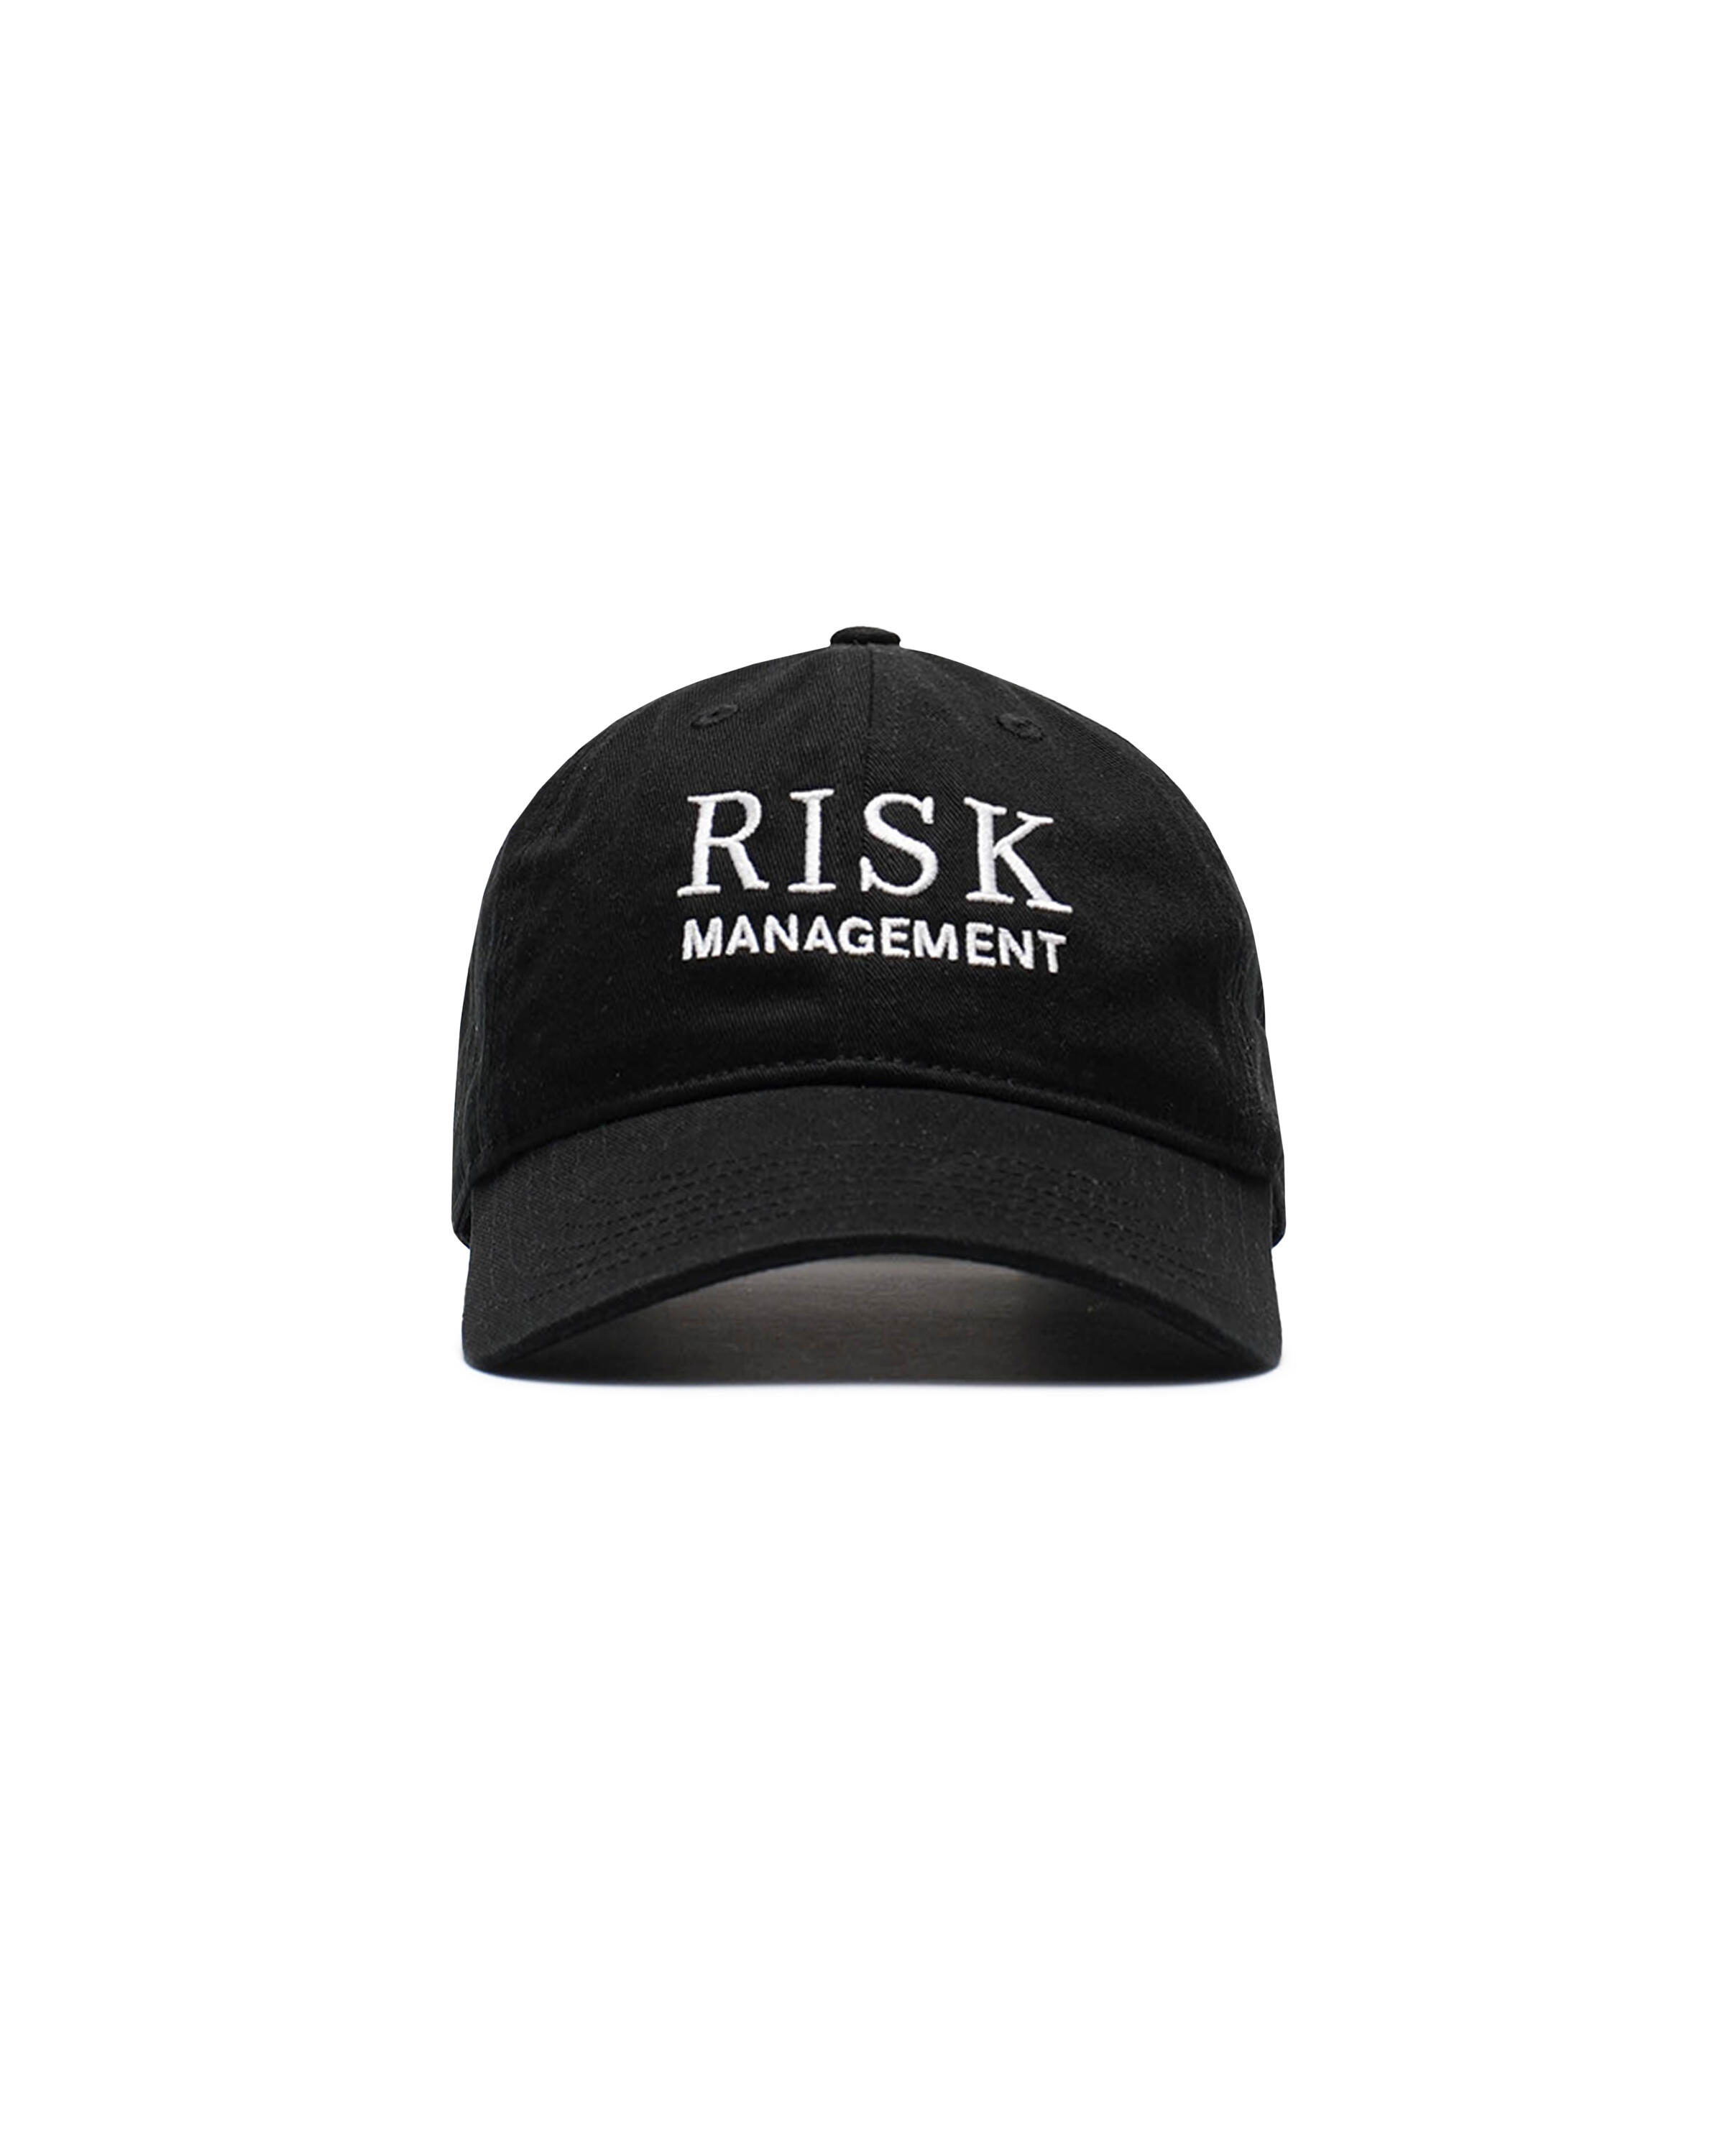 IDEA RISK MANAGEMENT HAT